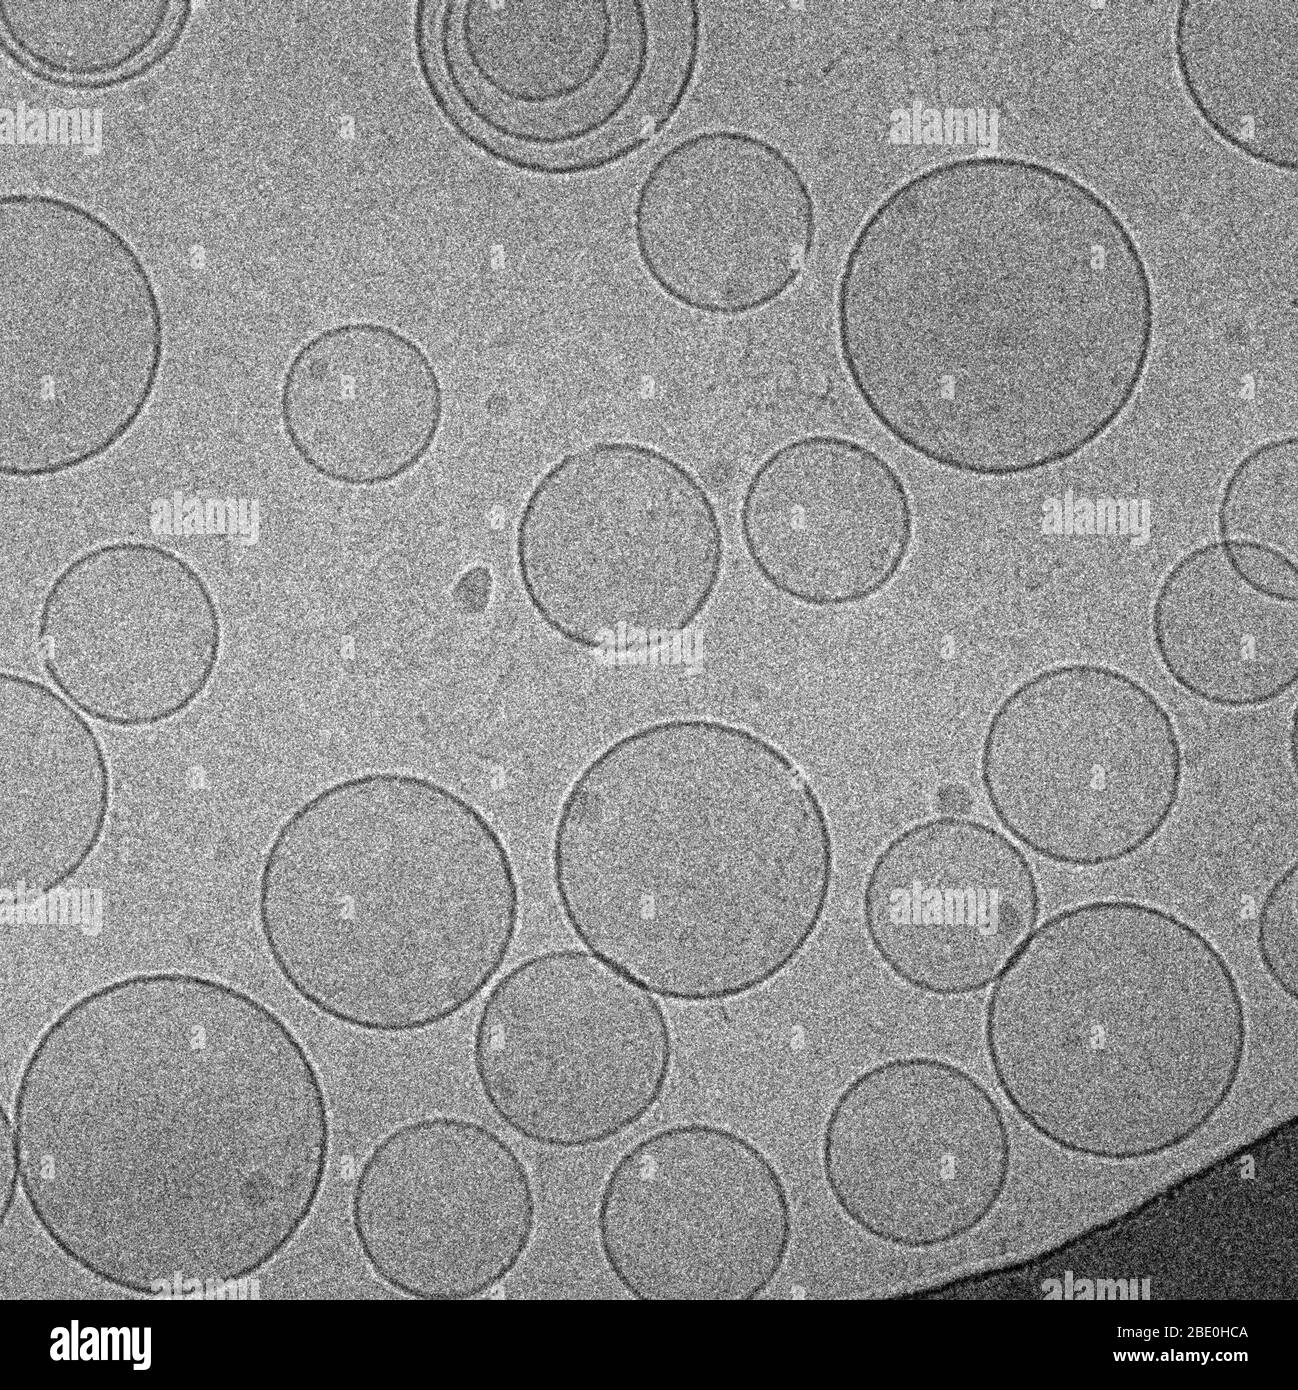 Image cryo-EM des liposomes bolipidés, vésicules préparées artificiellement composées d'une bicouche lipidique. Ils peuvent être utilisés comme véhicules pour l'administration de nutriments ou de produits pharmaceutiques. Agrandissement inconnu. Banque D'Images